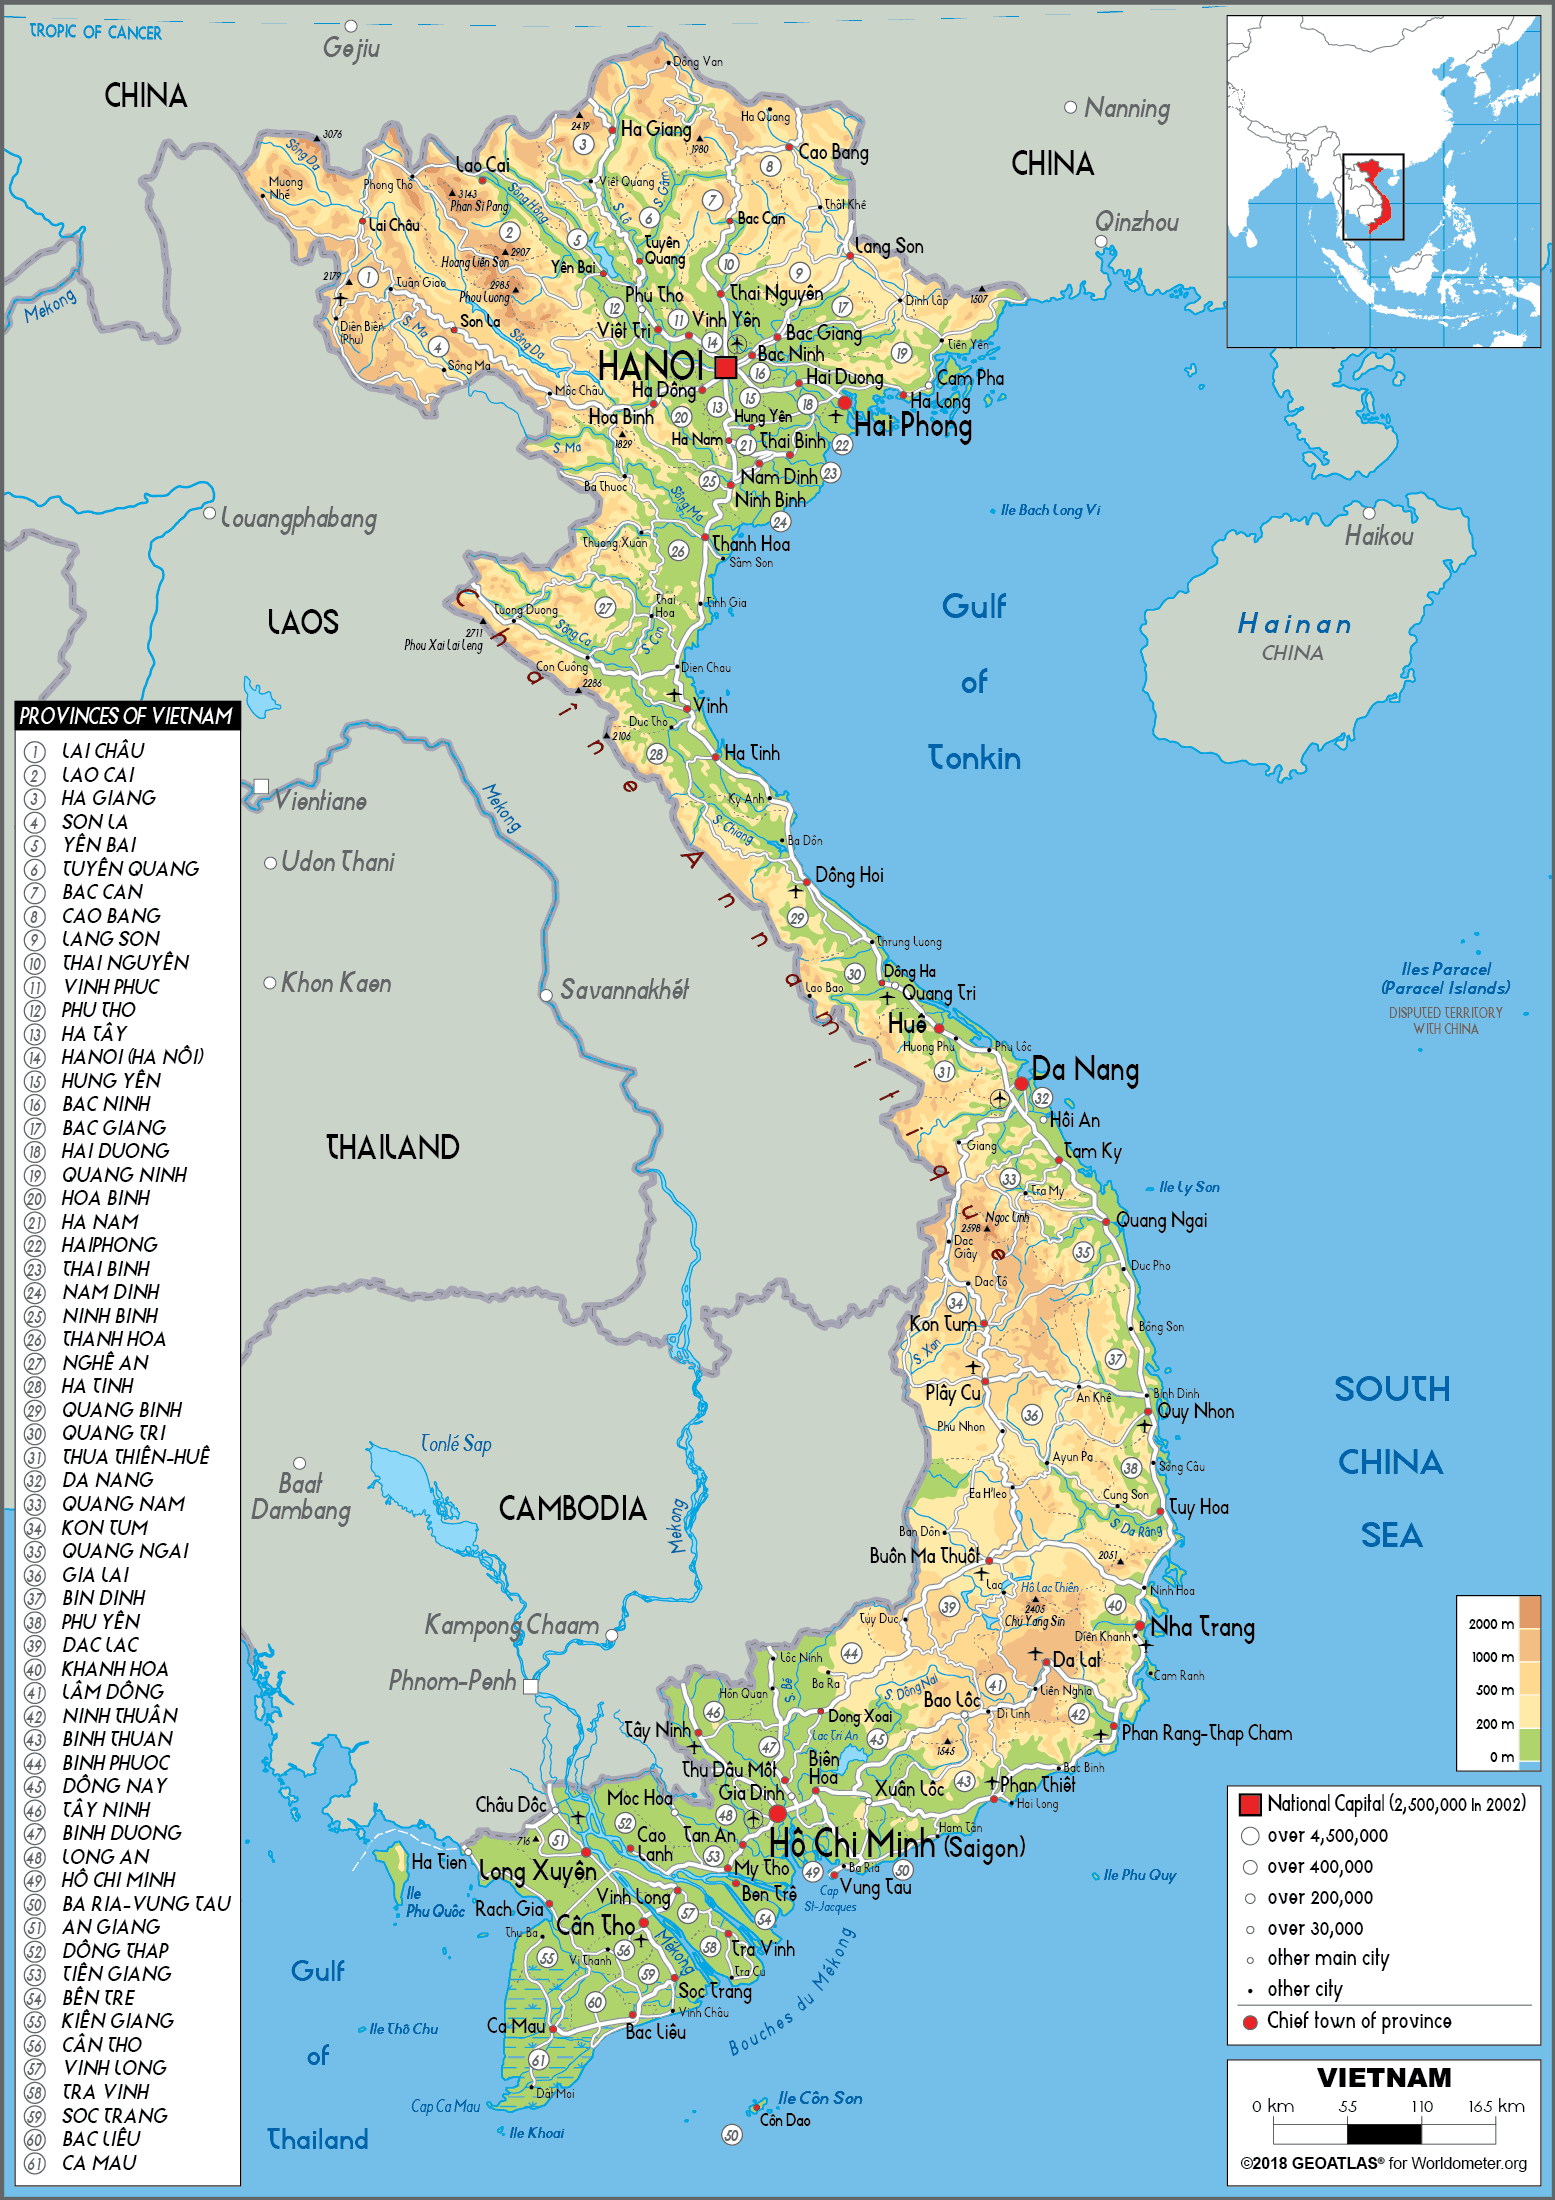 Bản đồ Việt Nam thể chất 2024: Năm 2024, bản đồ Việt Nam được cập nhật tính năng thể chất, giúp cho mọi người dễ dàng tìm kiếm và khám phá địa điểm phù hợp với sức khỏe của mình. Bạn có thể dễ dàng tìm thấy những địa điểm thích hợp cho việc tập luyện và rèn luyện sức khỏe.